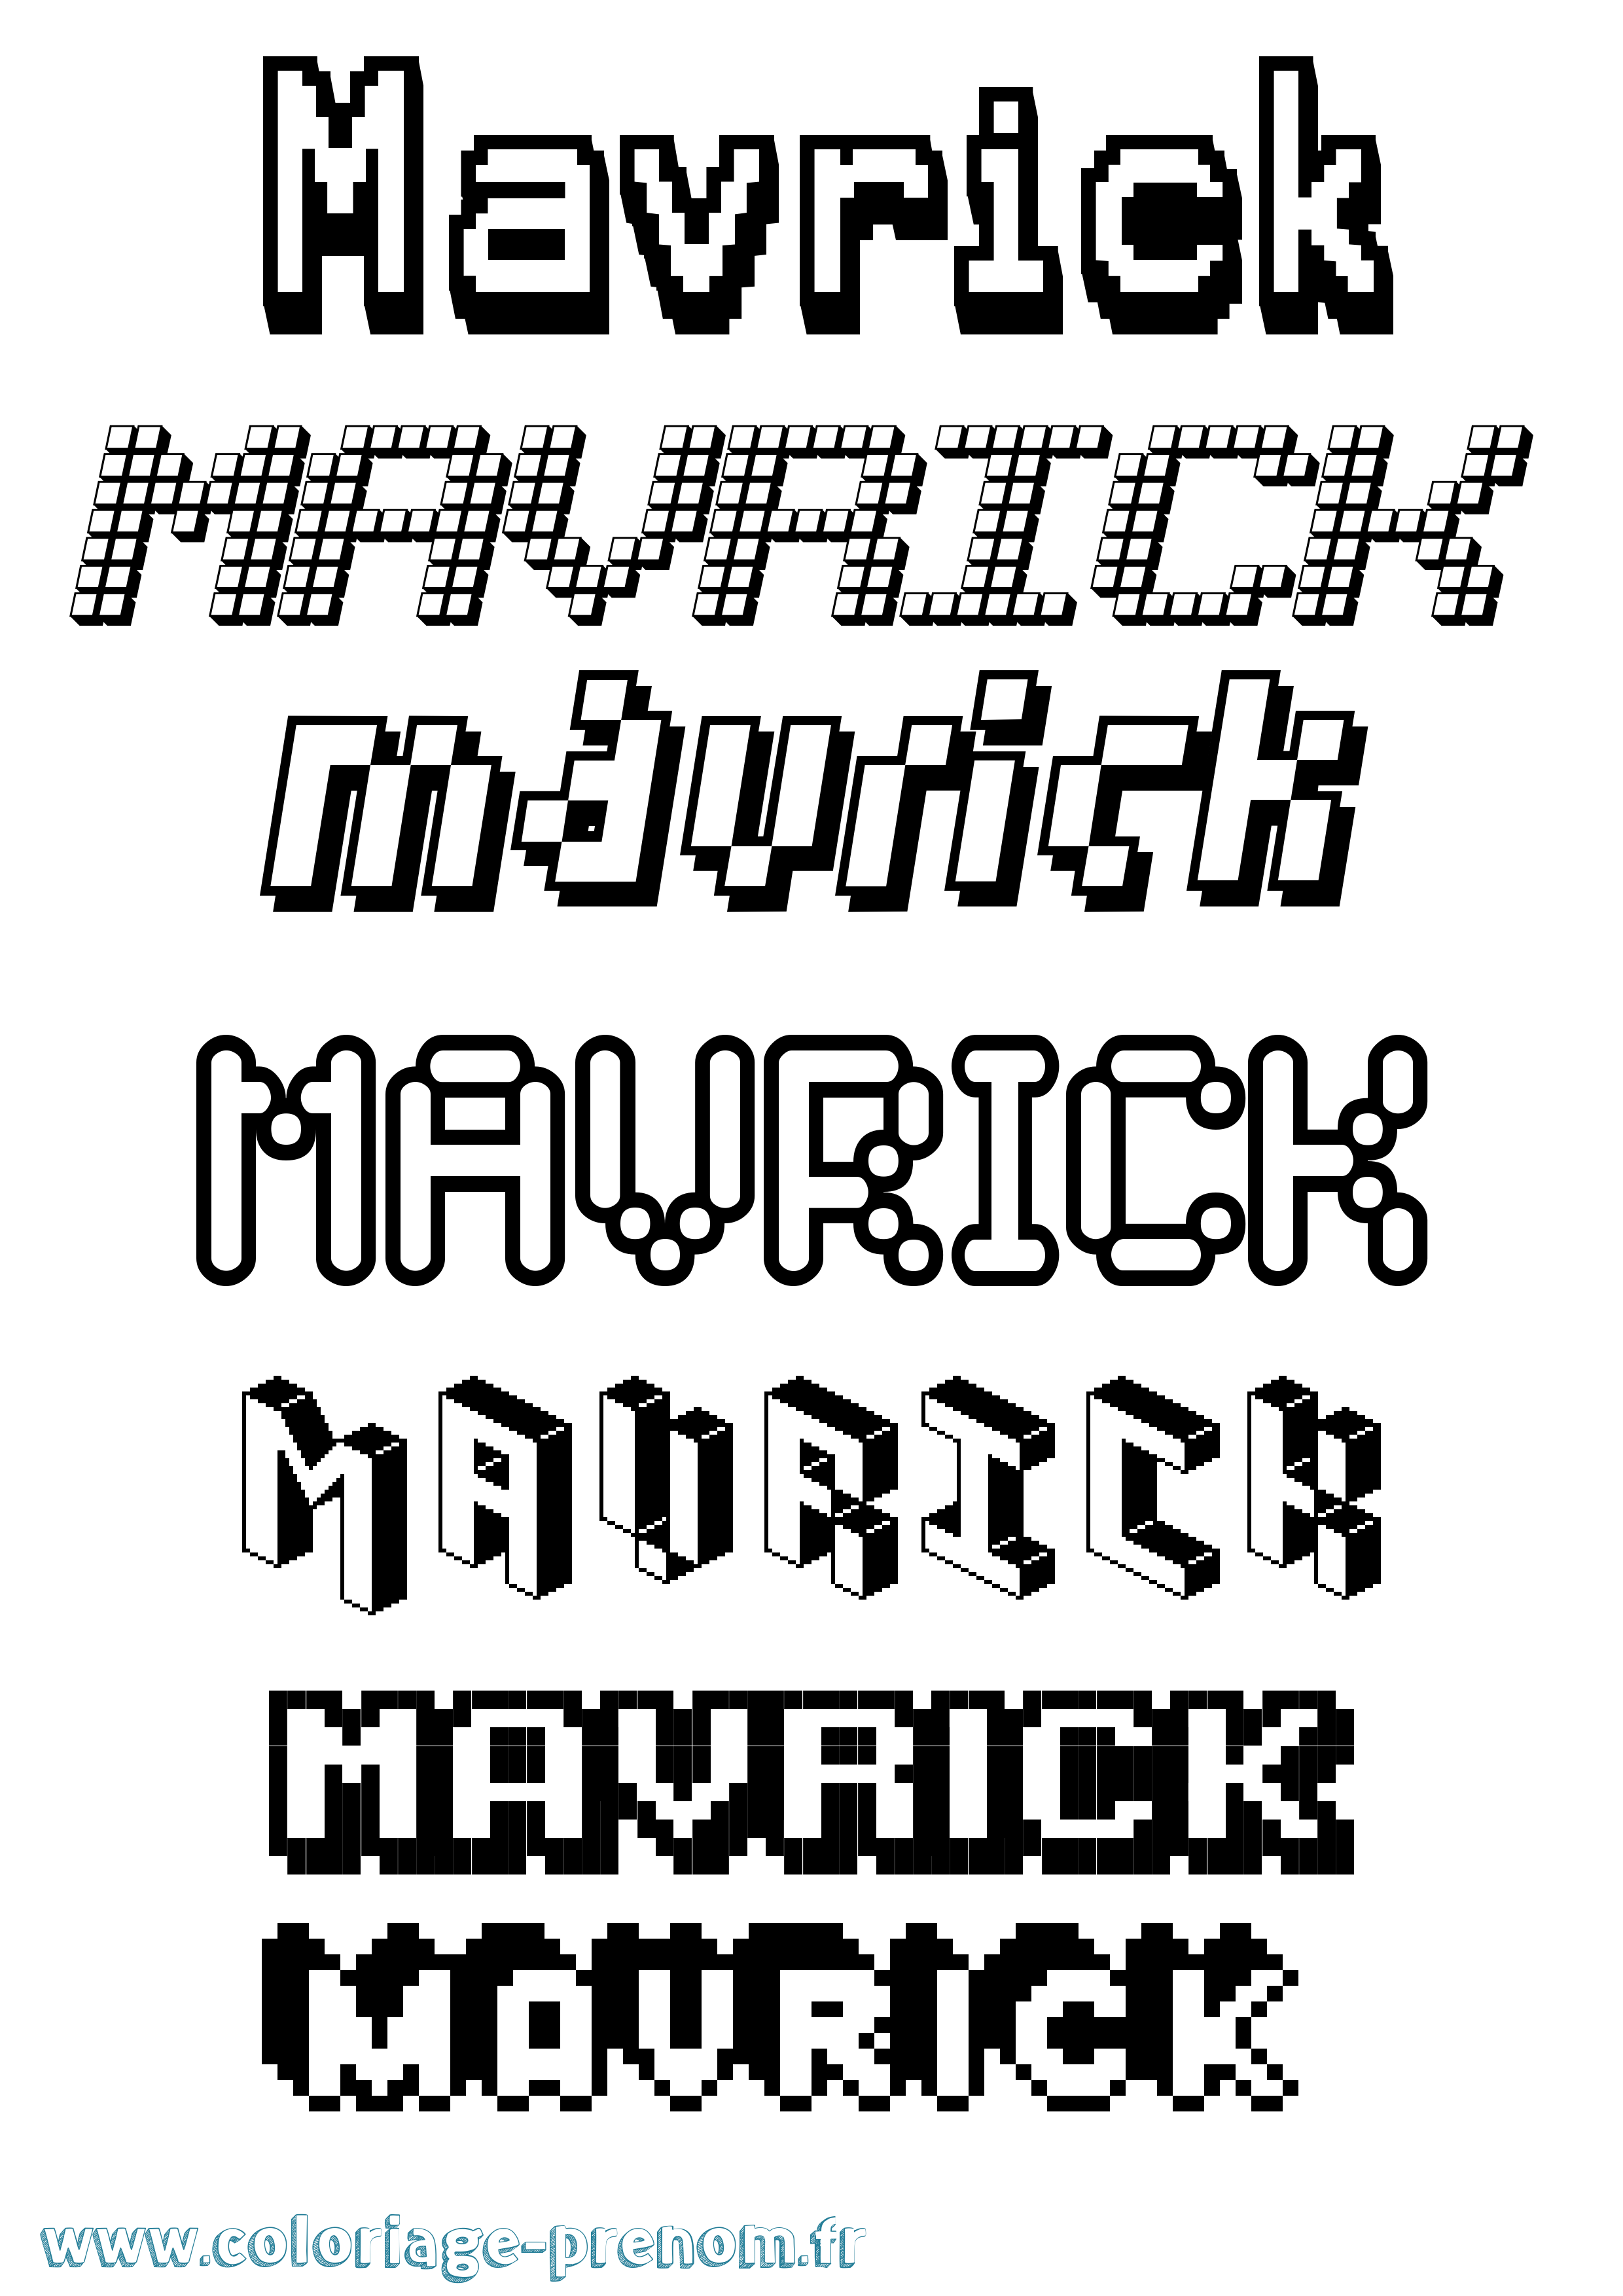 Coloriage prénom Mavrick Pixel